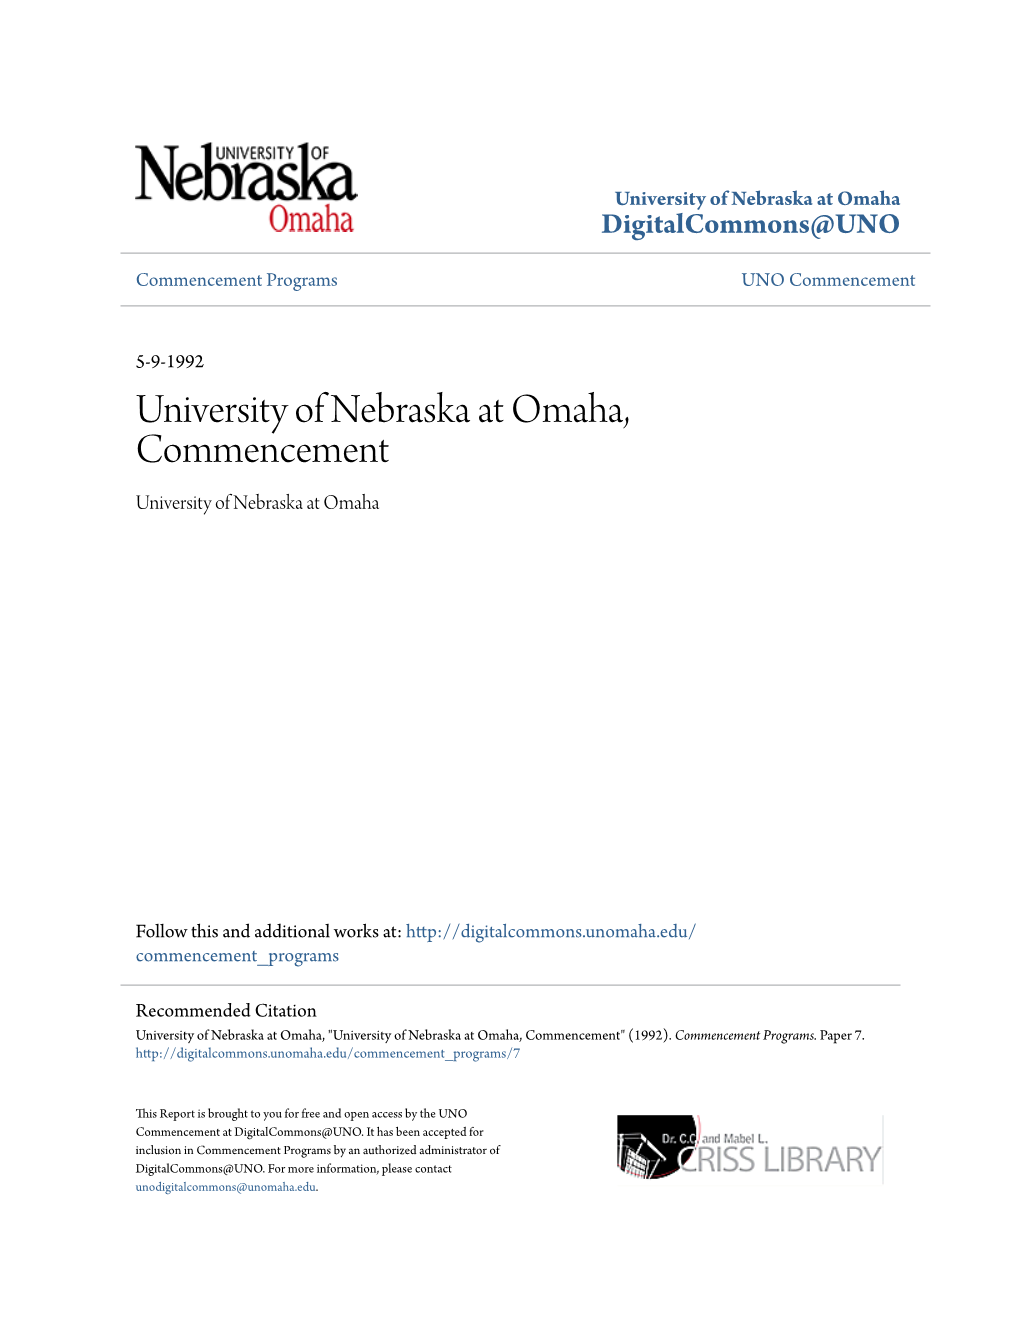 University of Nebraska at Omaha, Commencement University of Nebraska at Omaha